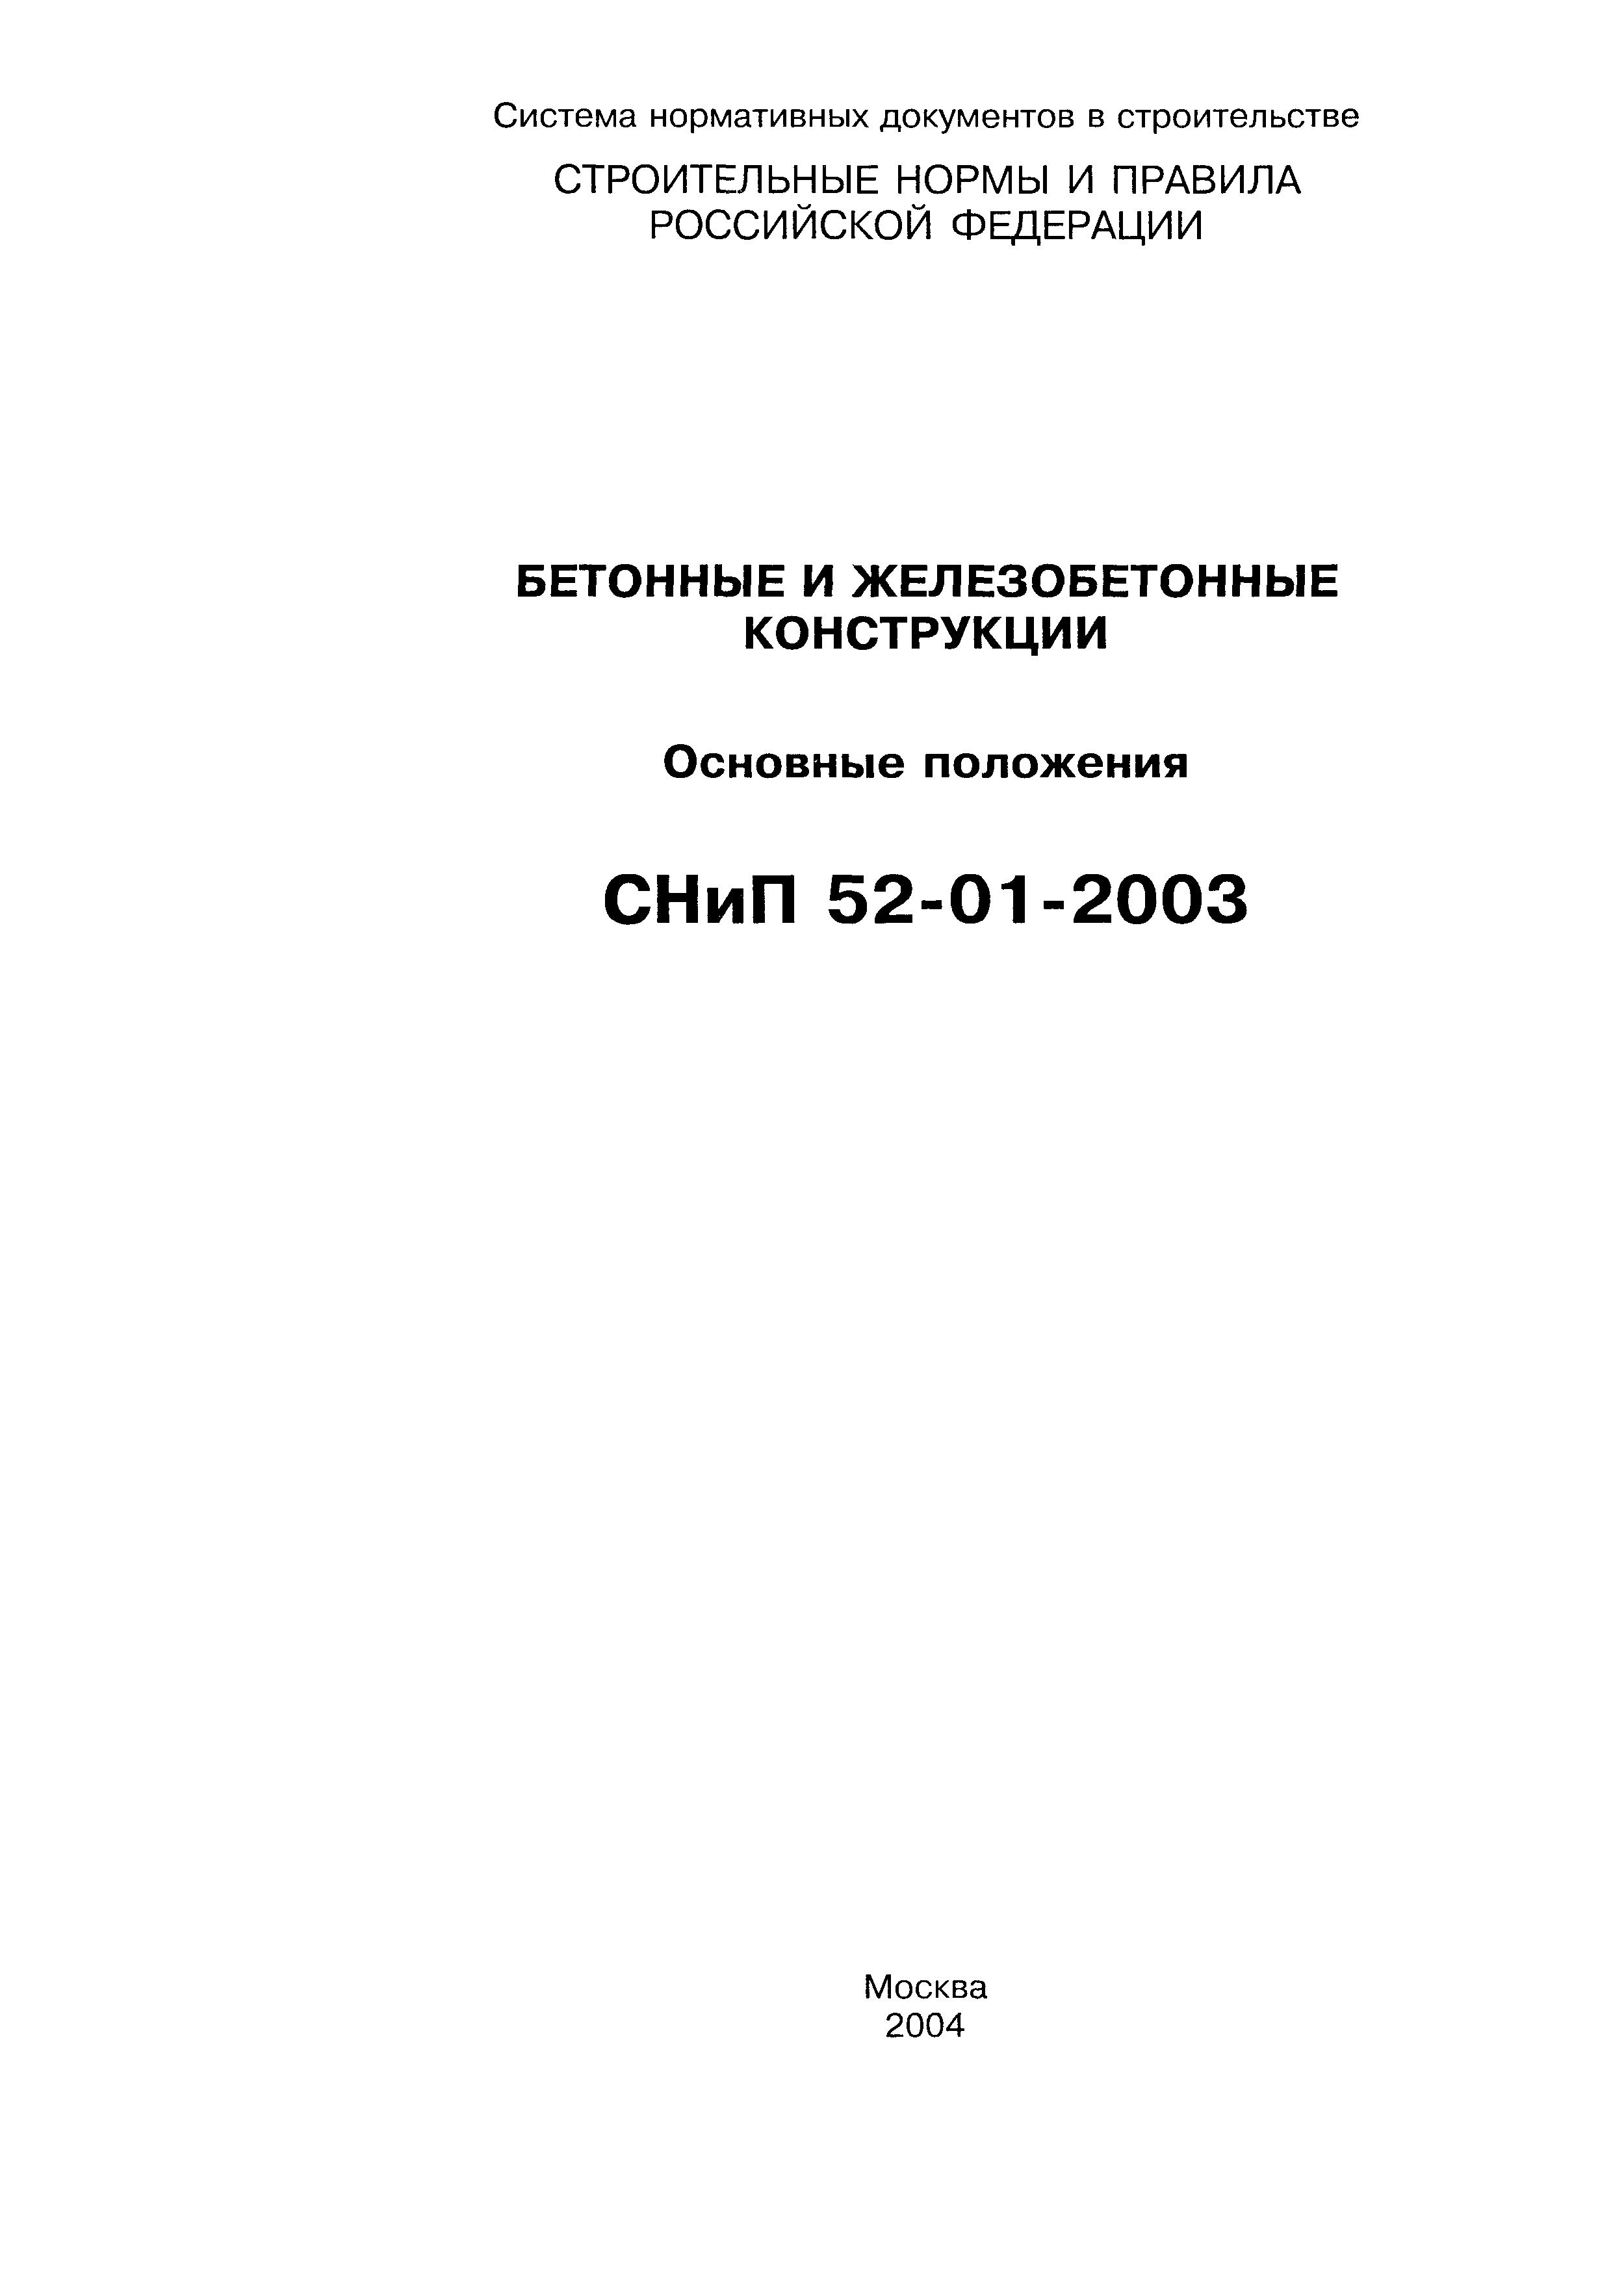 СНиП 52-01-2003